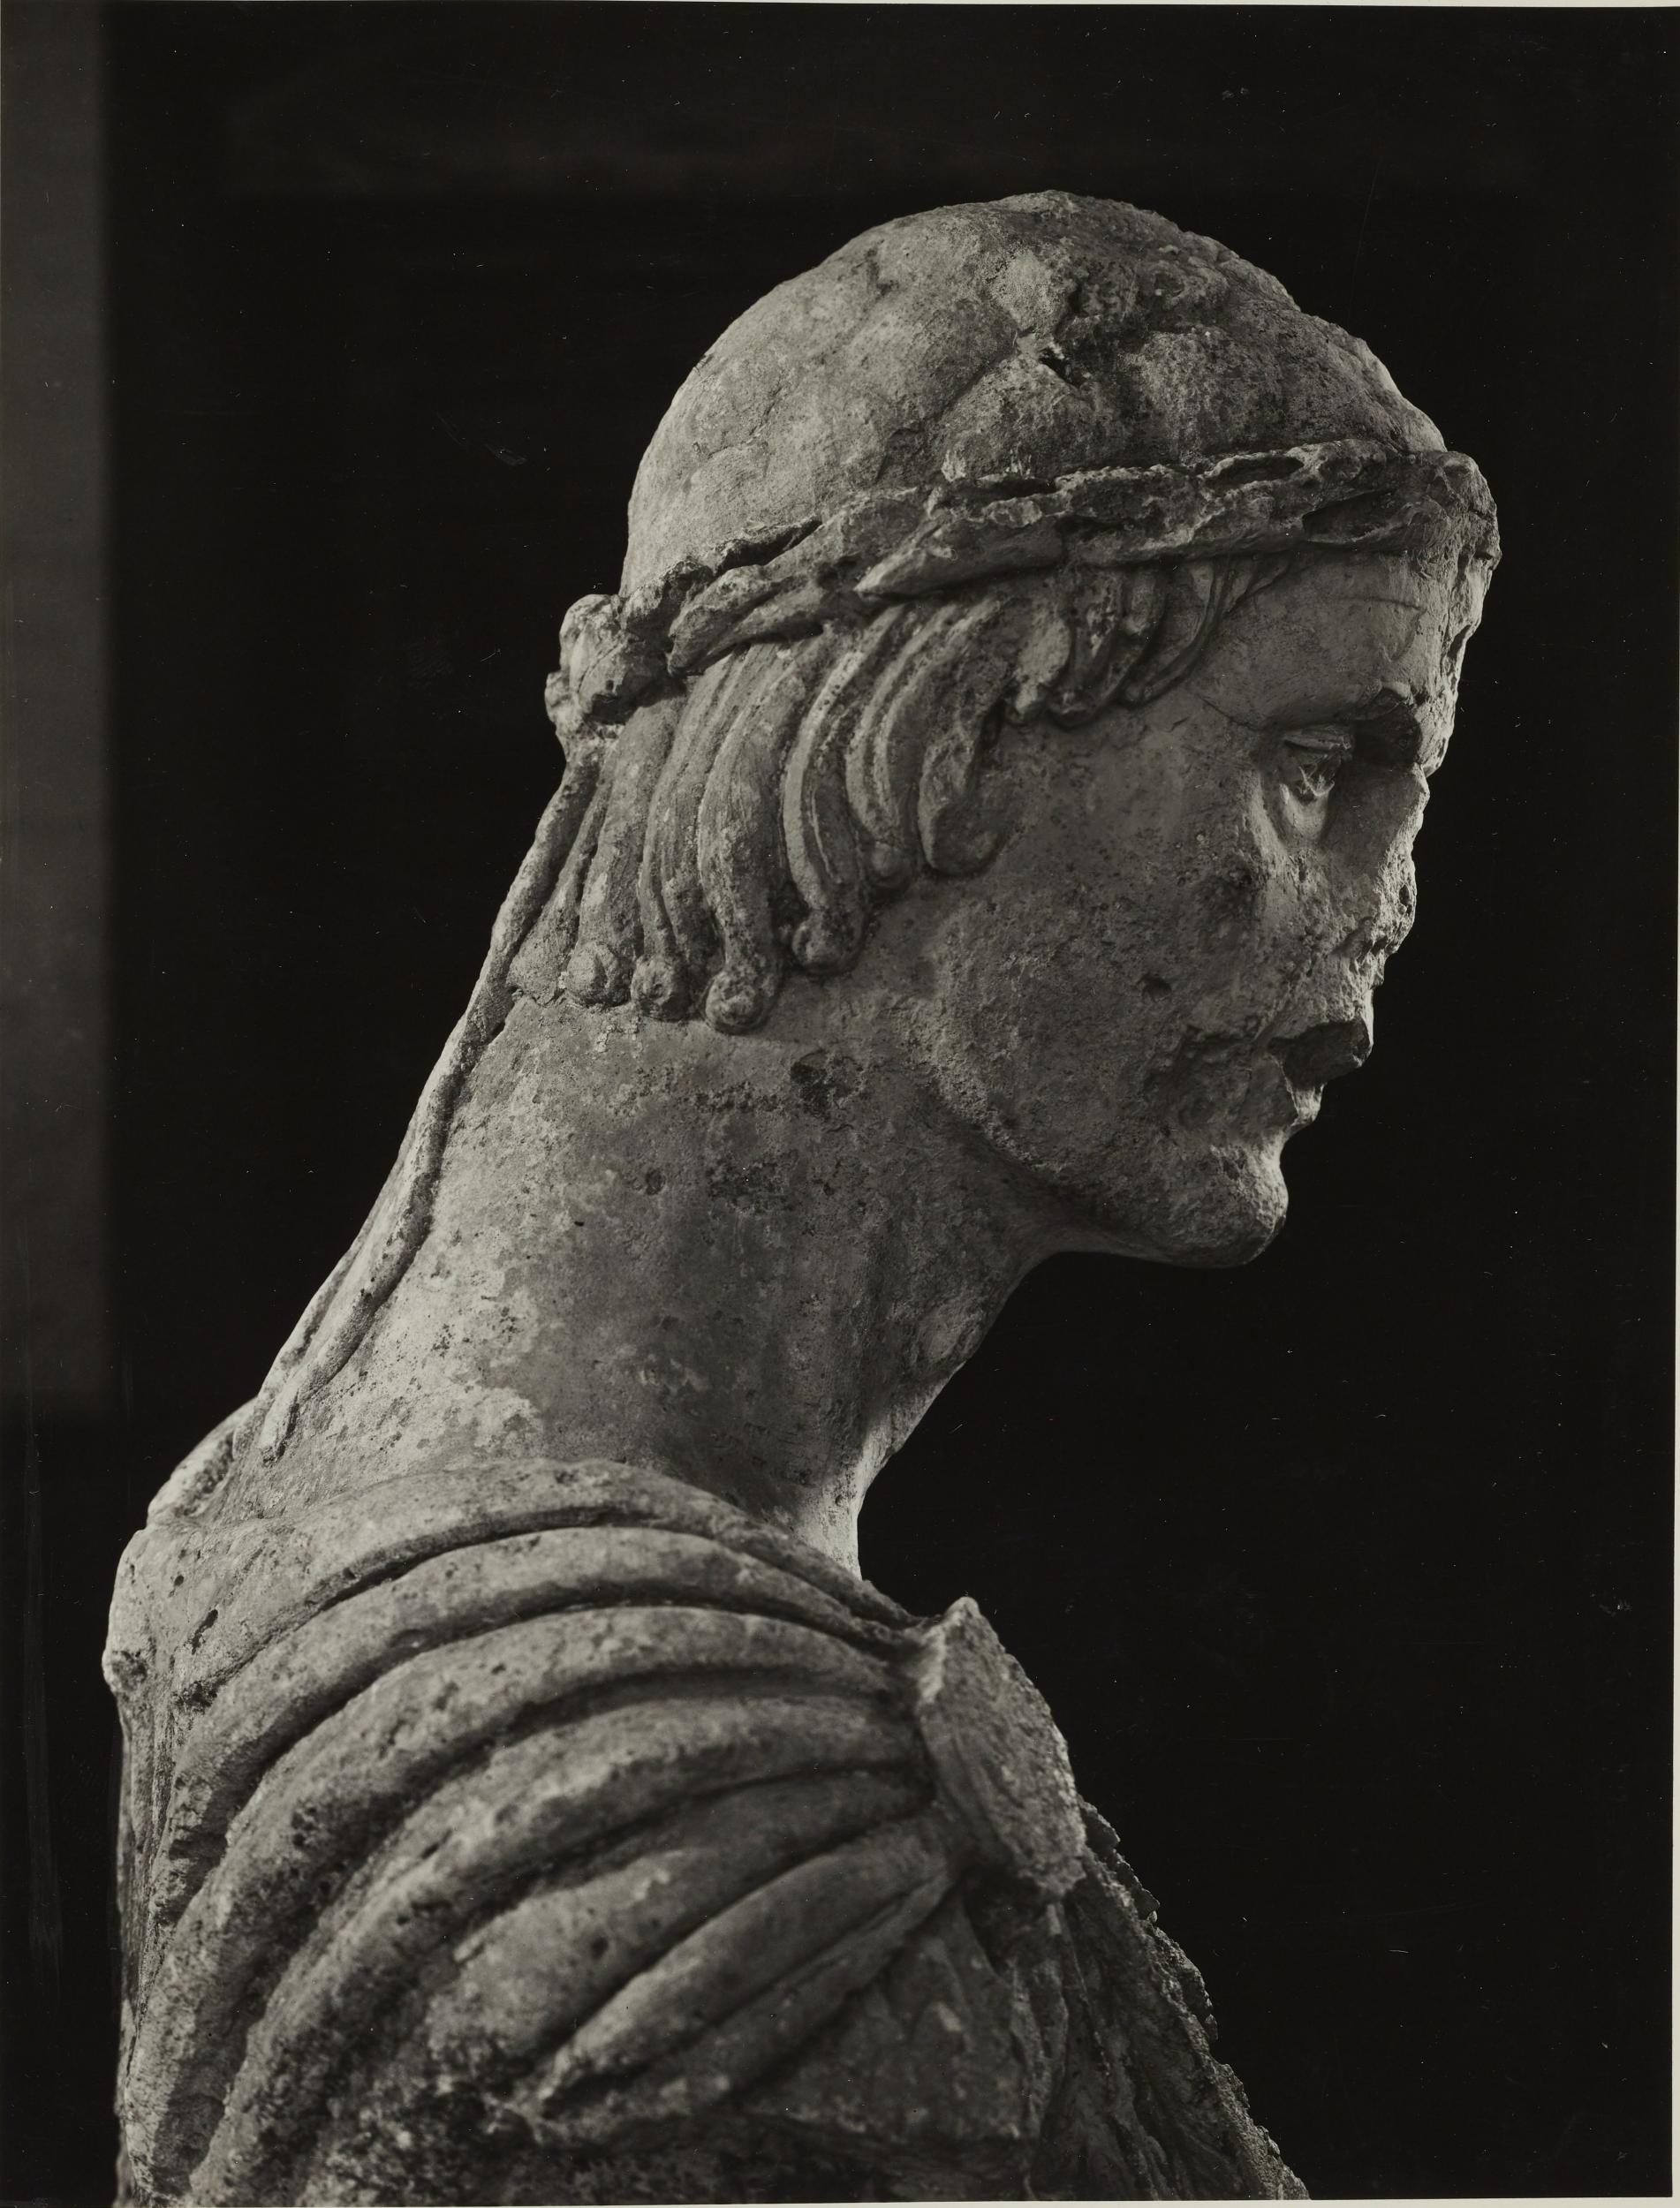 Fotografo non identificato, Barletta - Castello, Museo Civico, busto detto di Federico II, 1953–1954, gelatina ai sali d'argento/carta, MPI6023060